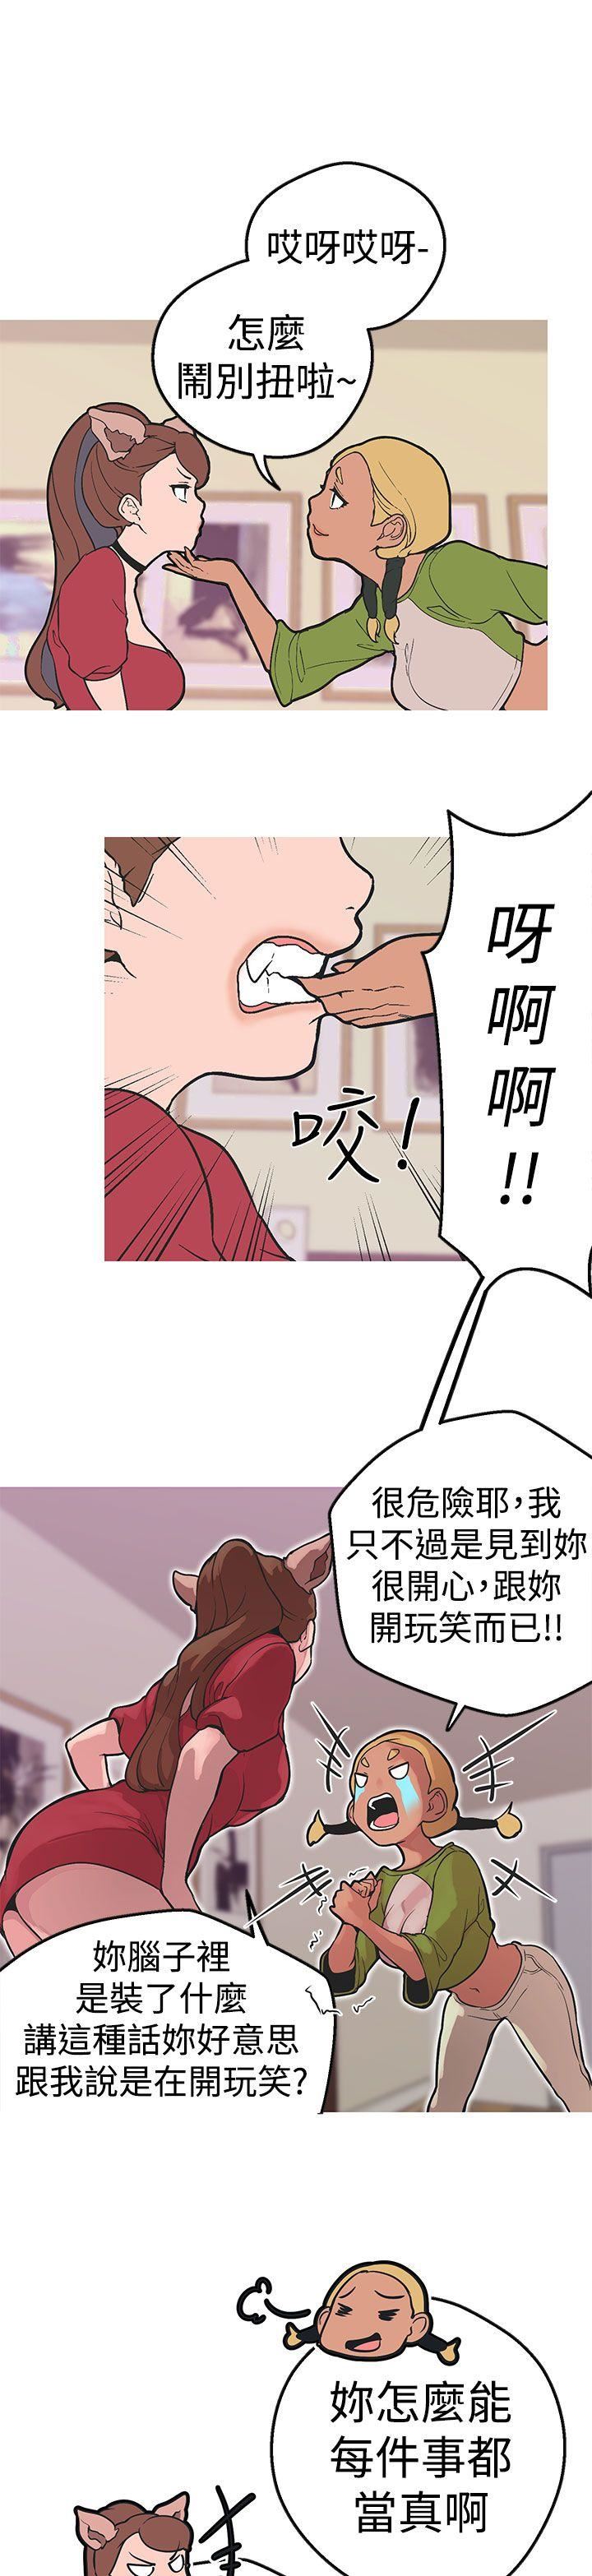 韩国污漫画 女神狩獵 第35话 12